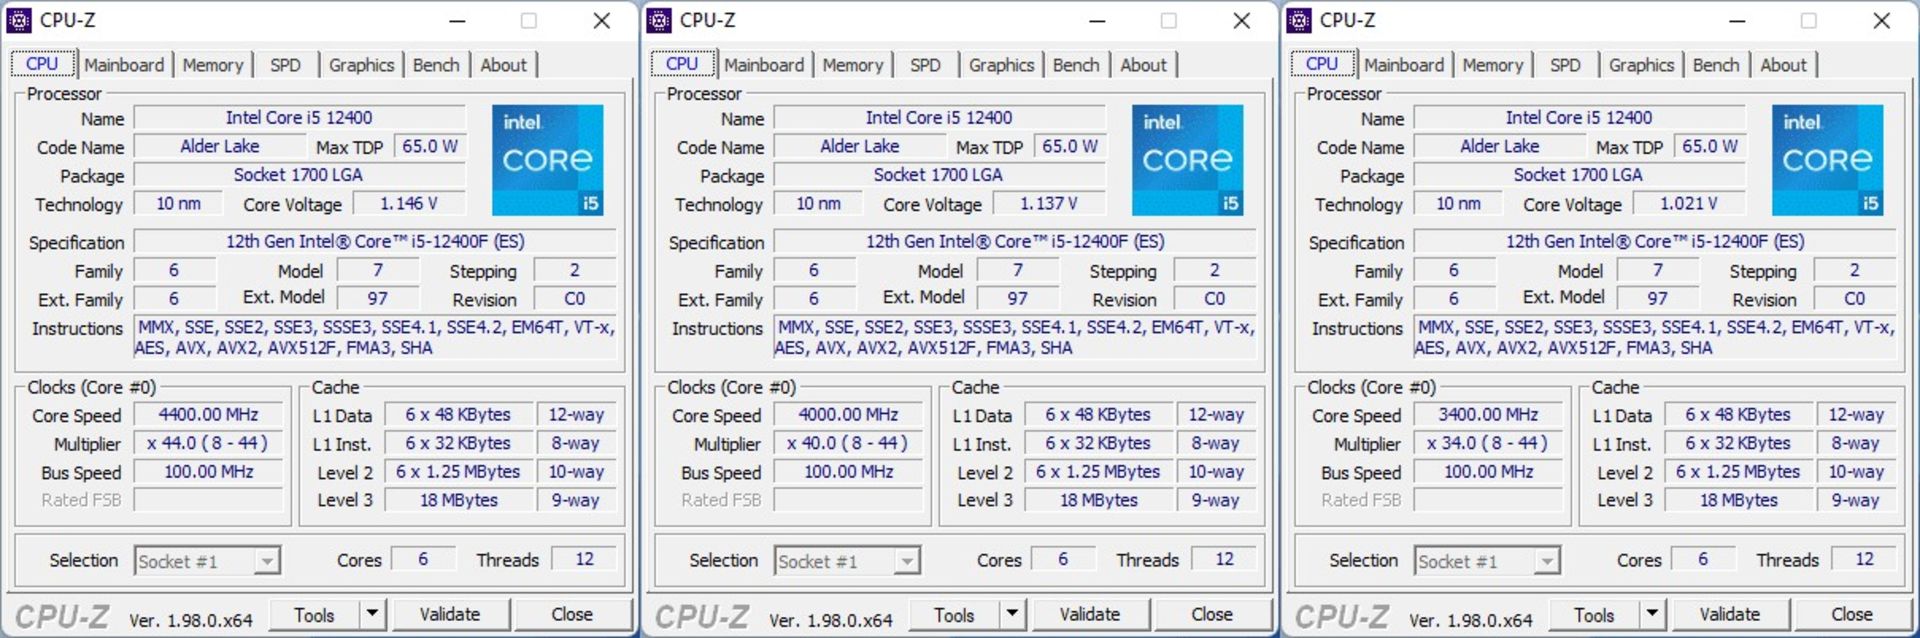 Intel Core i5-12400F cpu-z